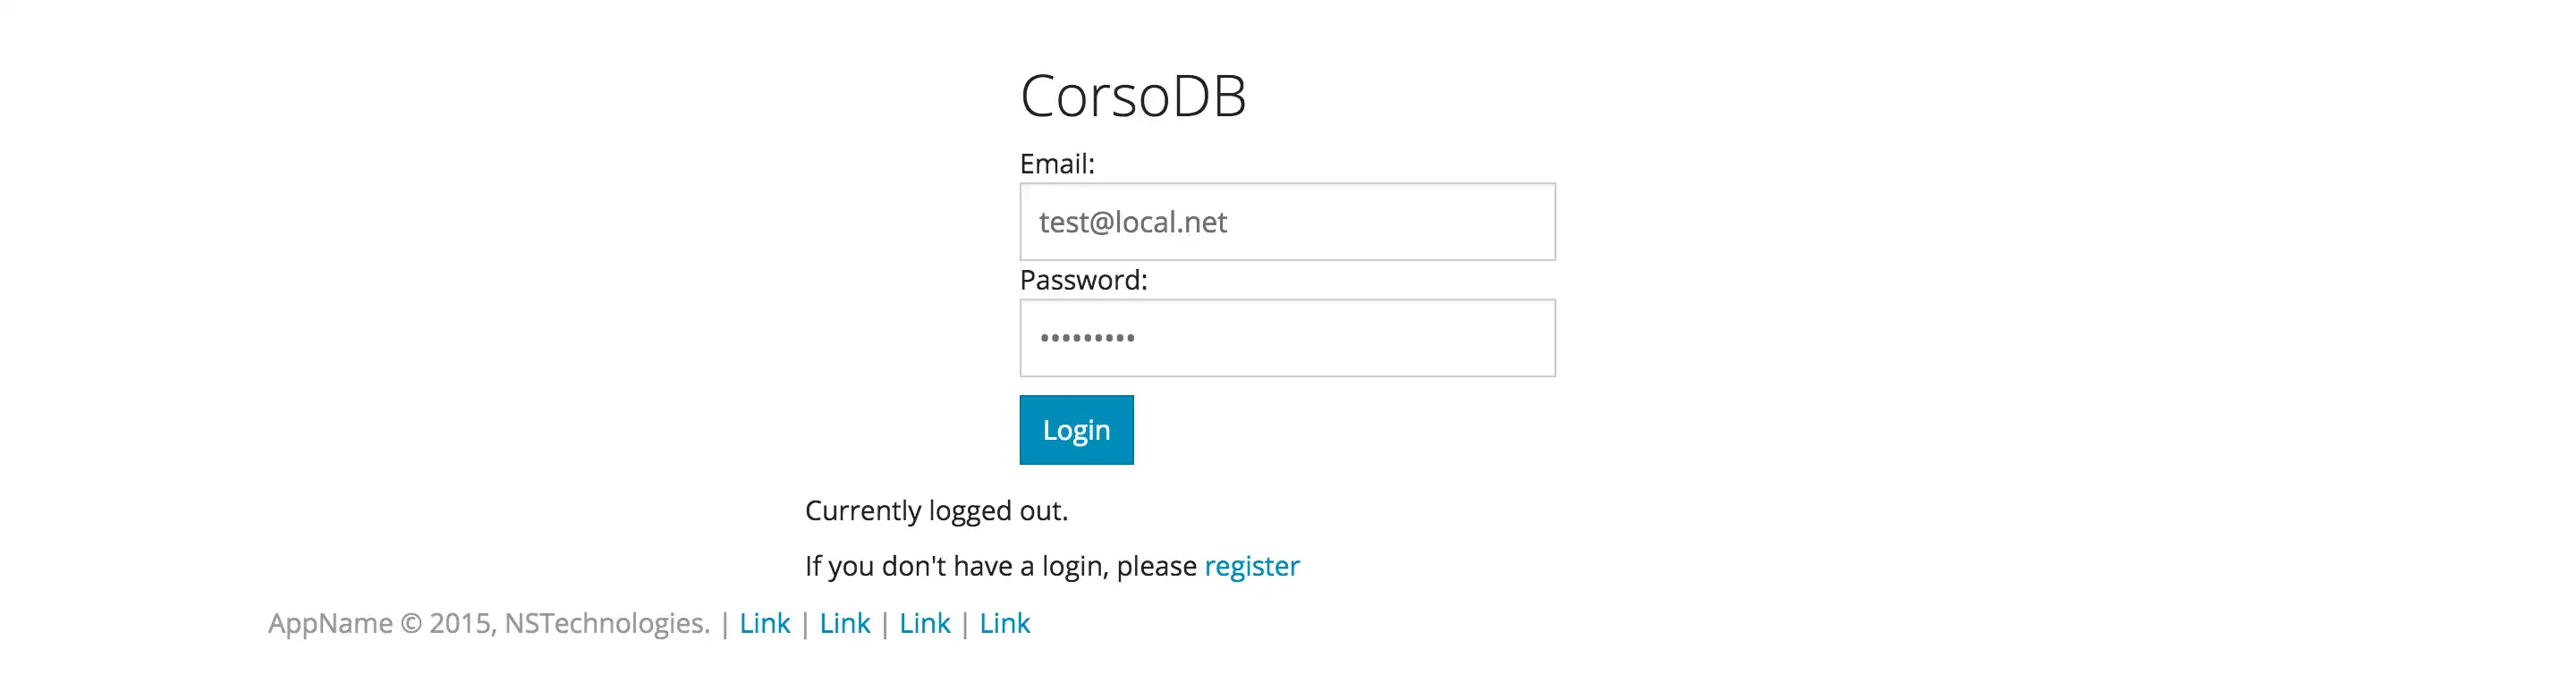 ابزار وب یا برنامه وب CorsoDB Web Application Framework را دانلود کنید